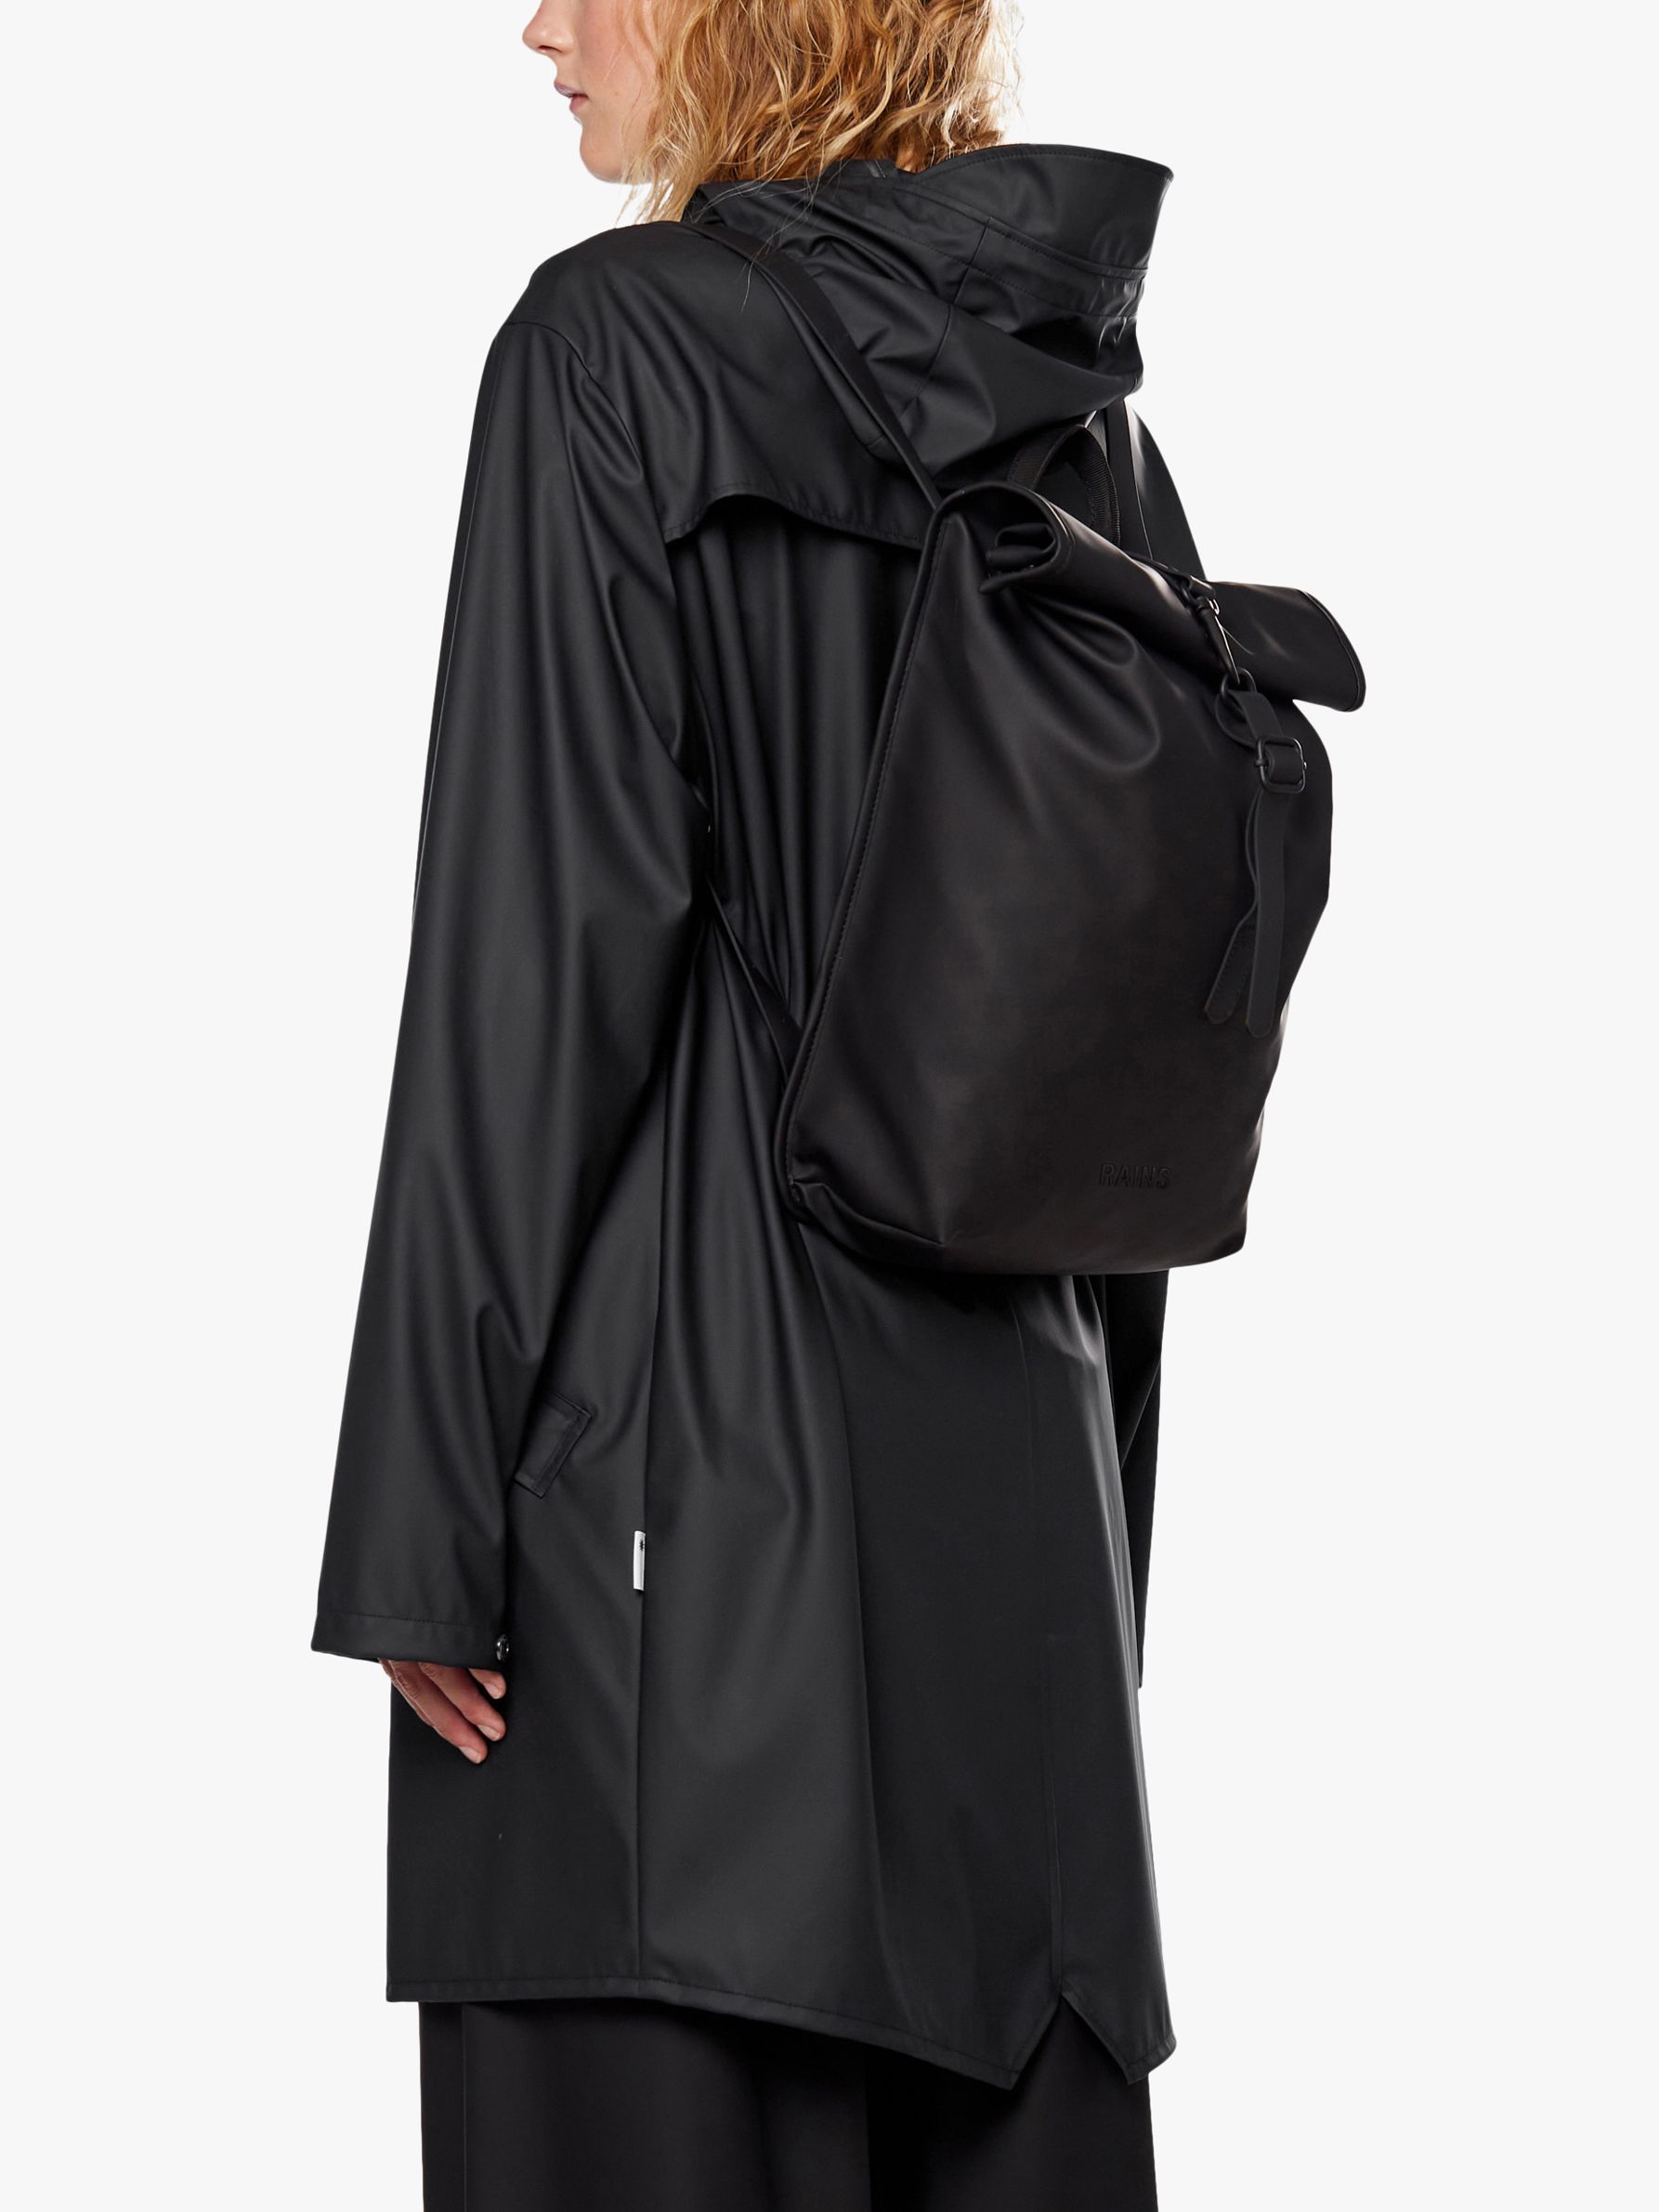 Rains Rolltop Mini Waterproof Backpack, Black